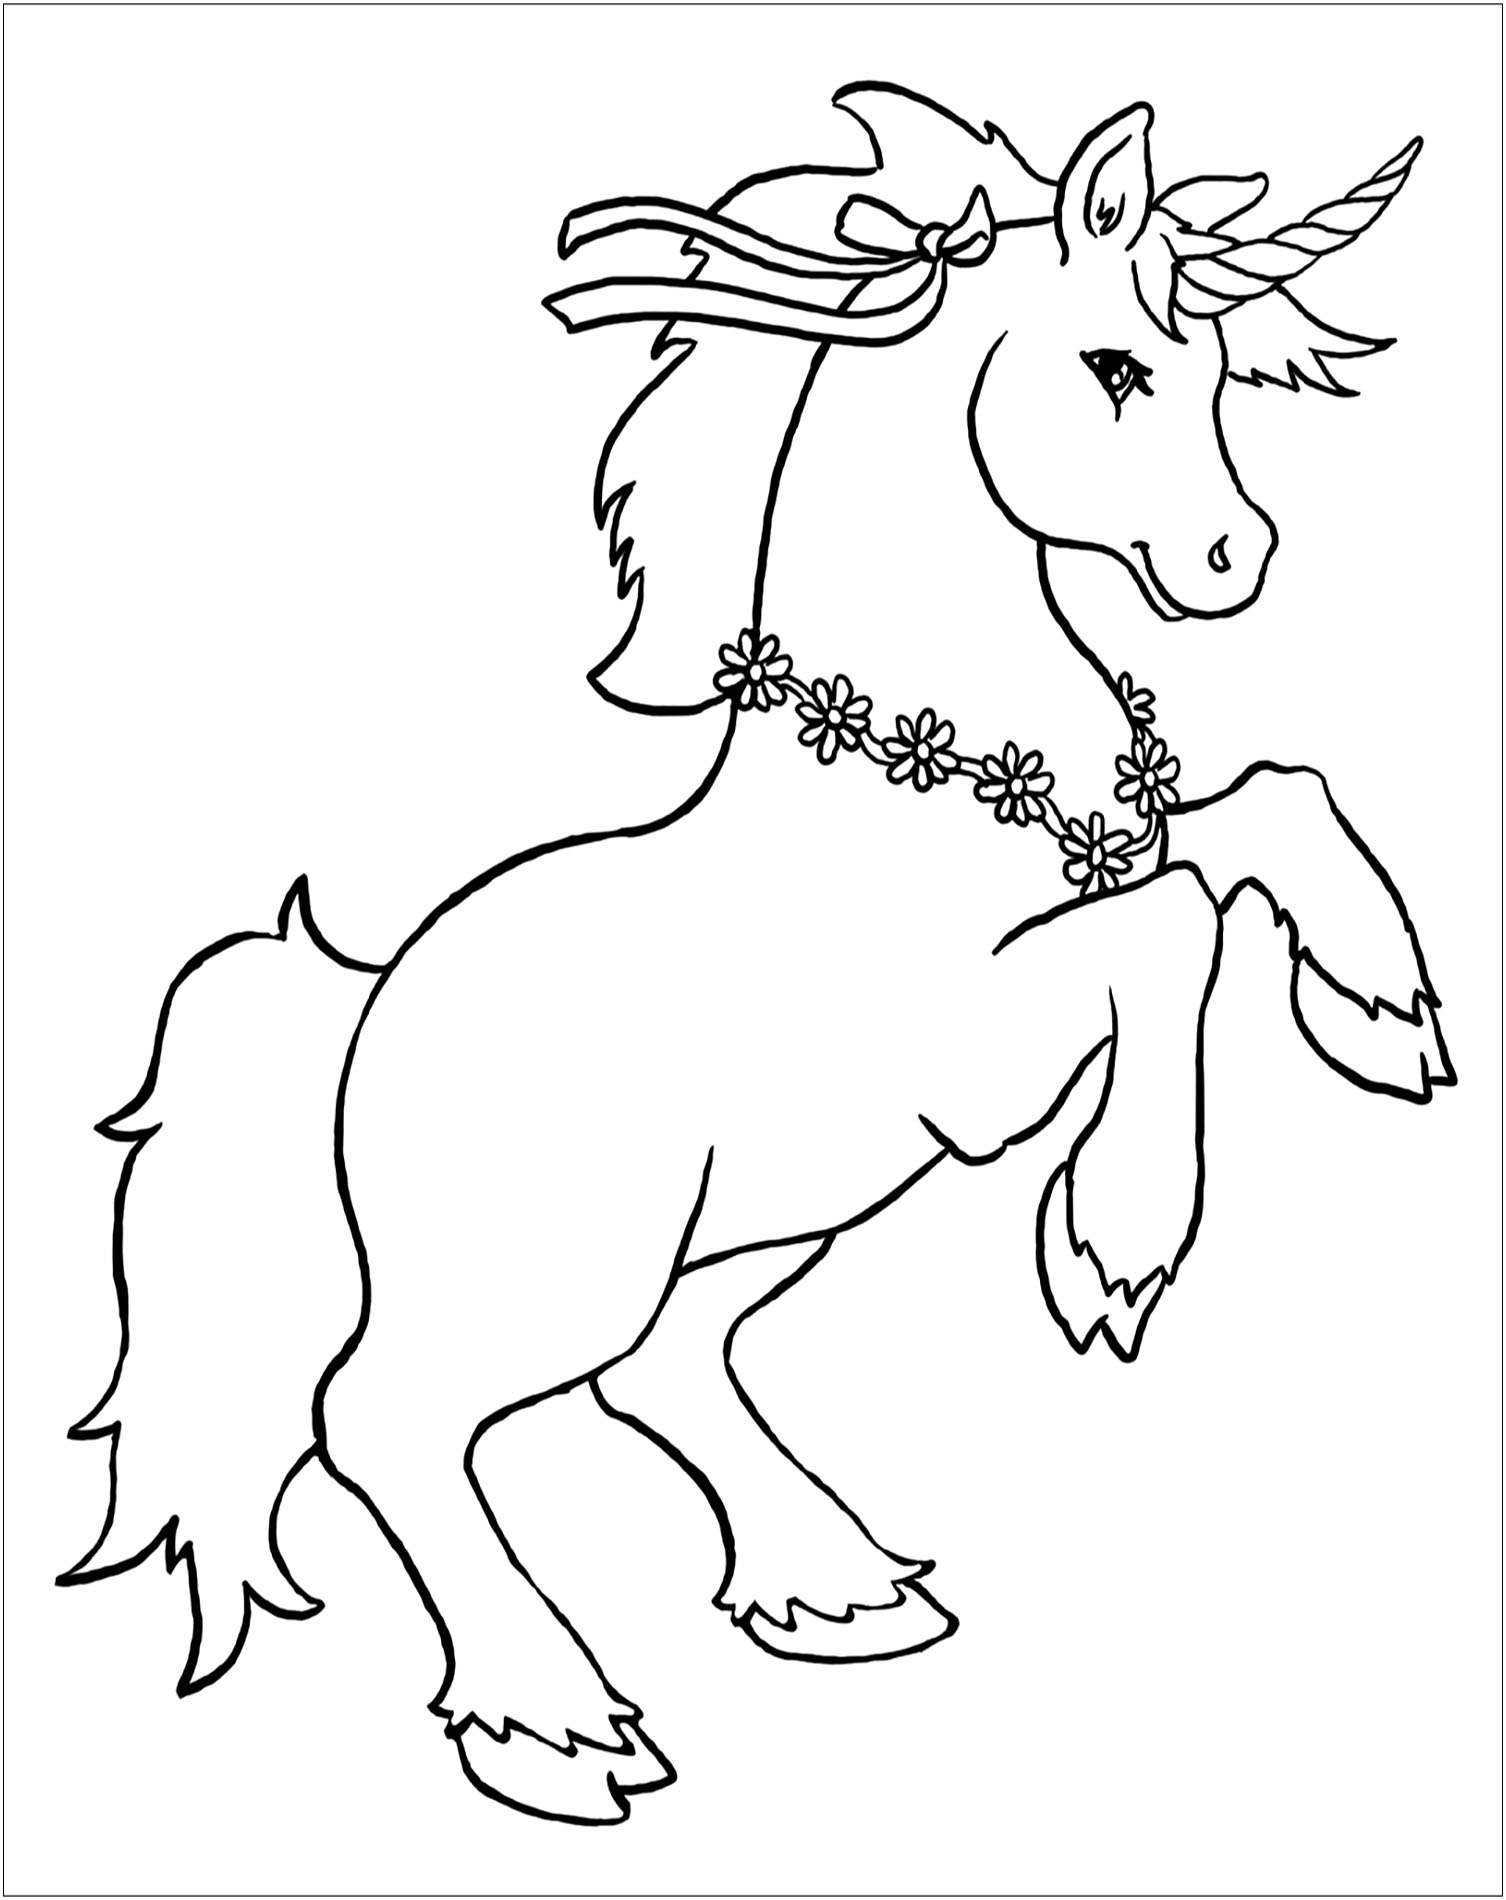 Colorear un unicornio para niños